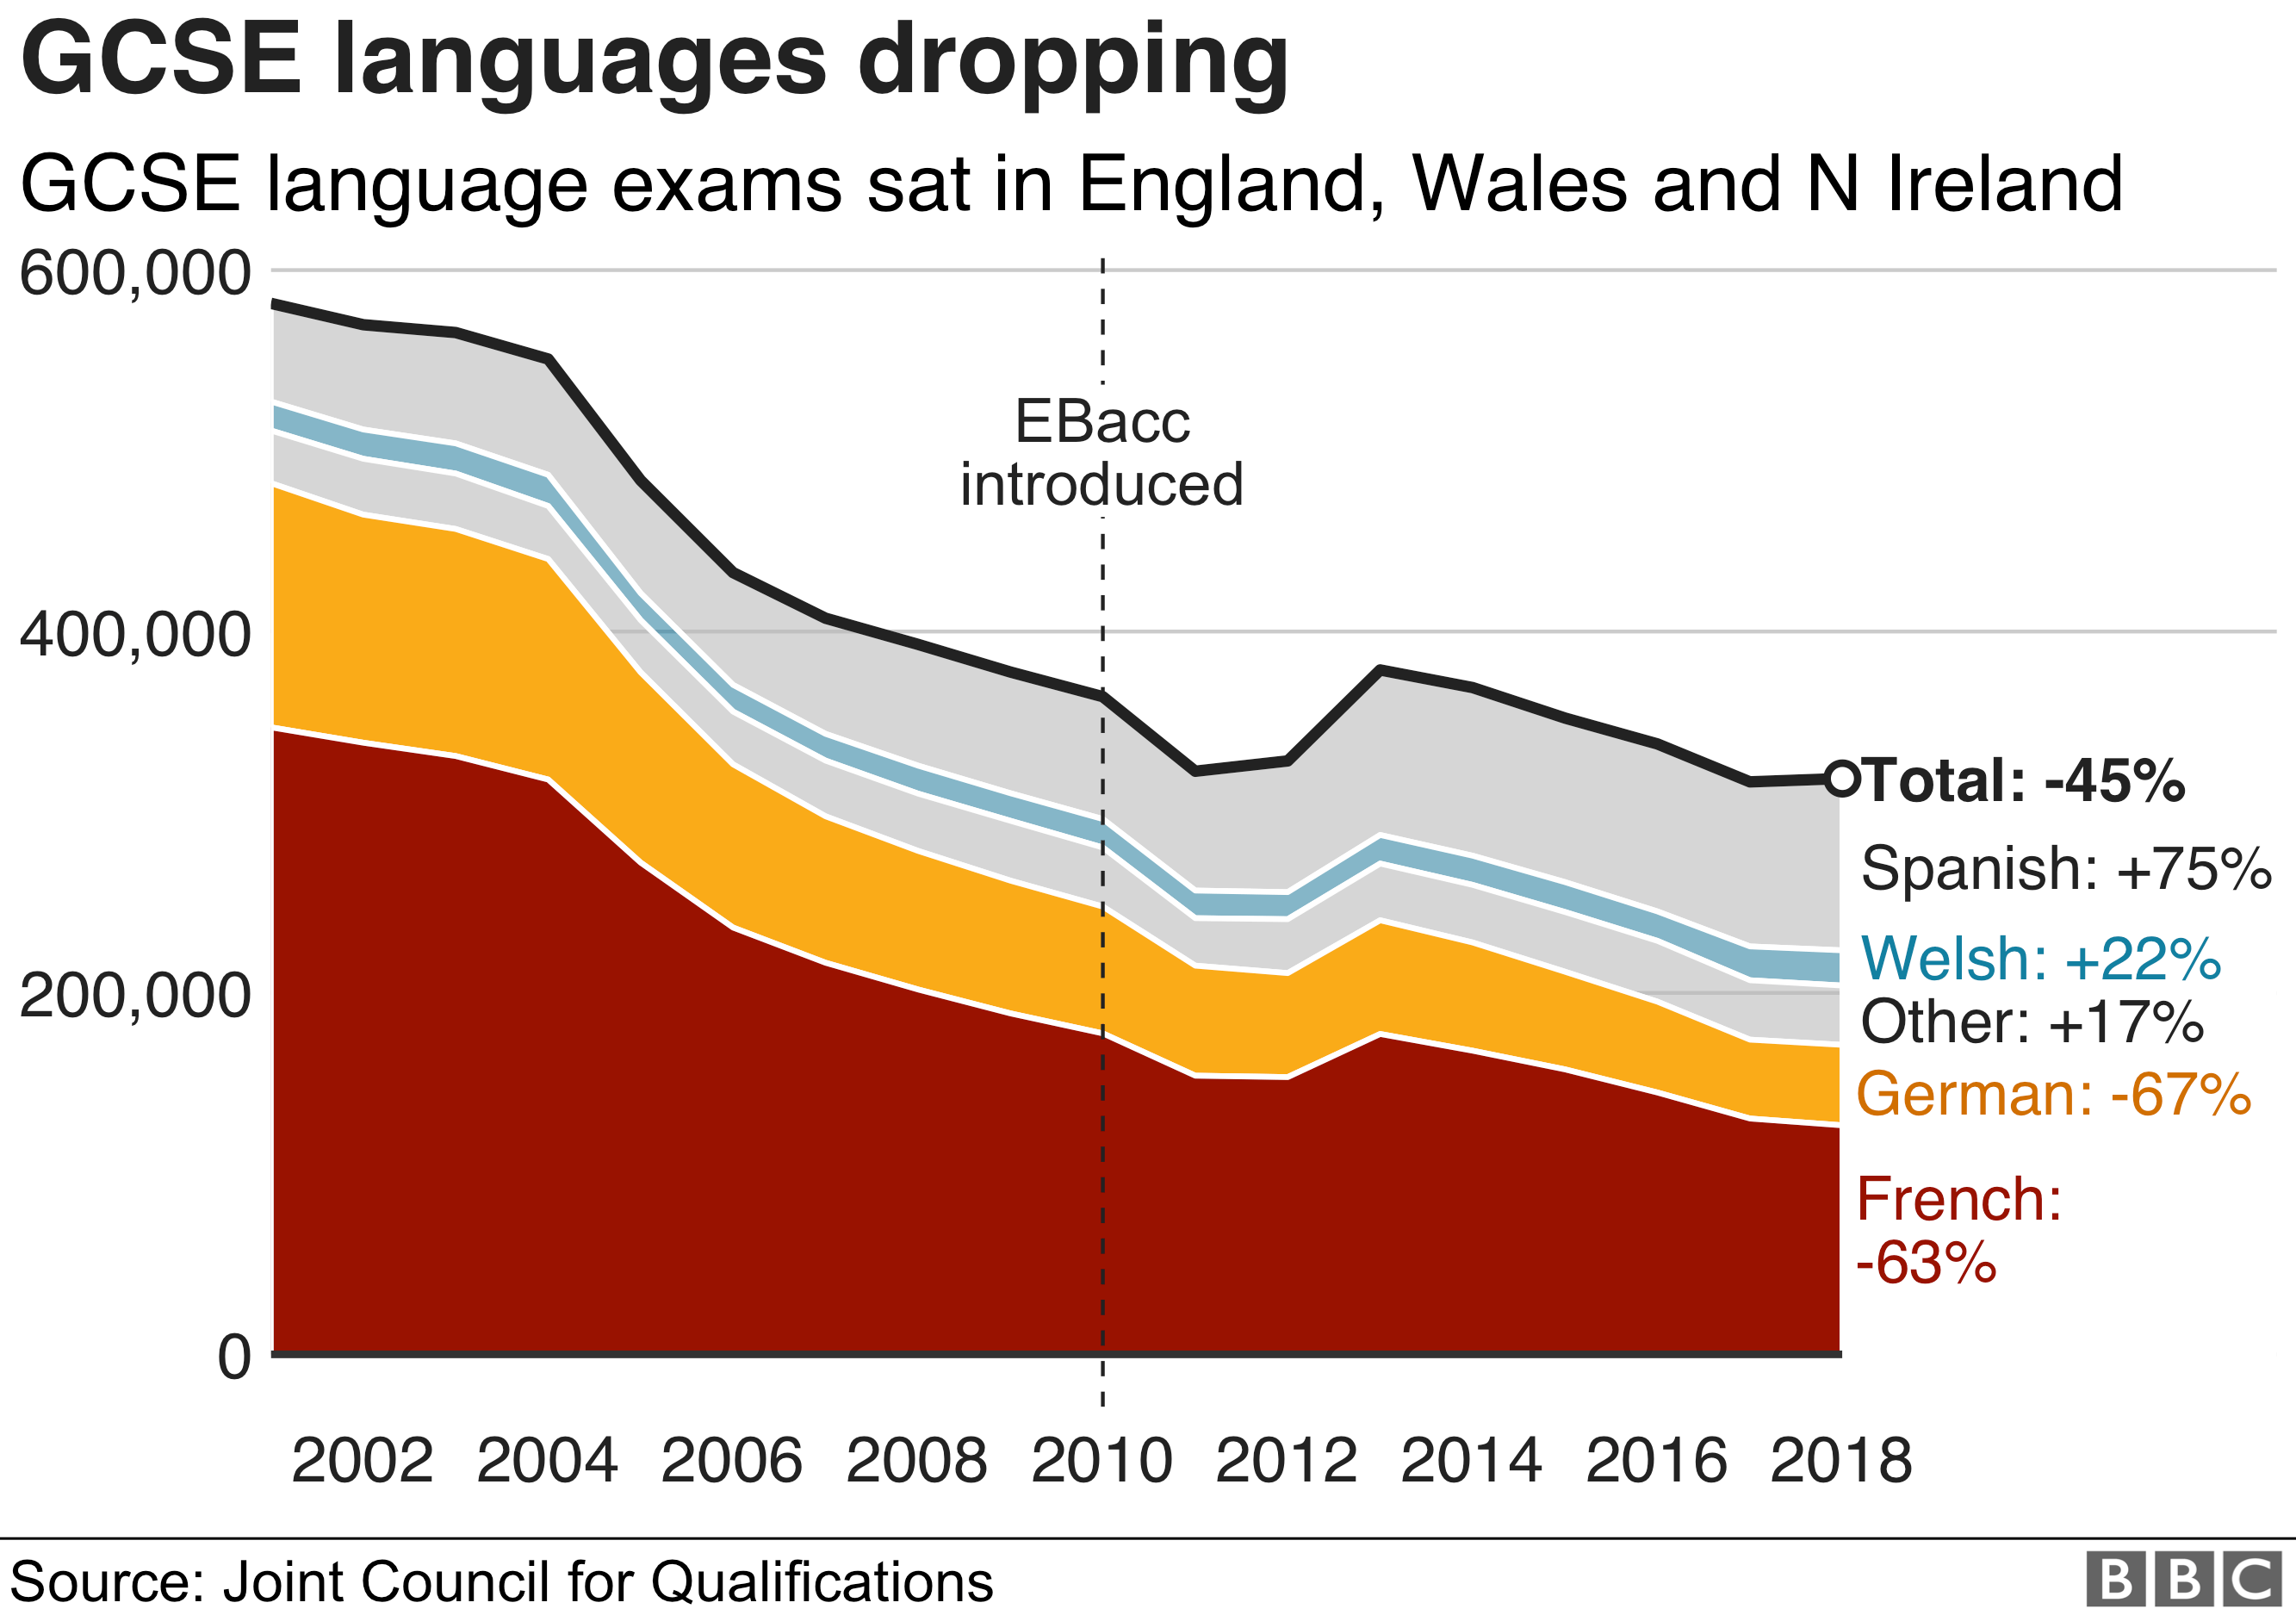 диаграмма, показывающая, как уровень GCSE снижается в Англии, Уэльсе и Северной Ирландии - общий показатель 45%, немецкий и французский - 67% и 63%